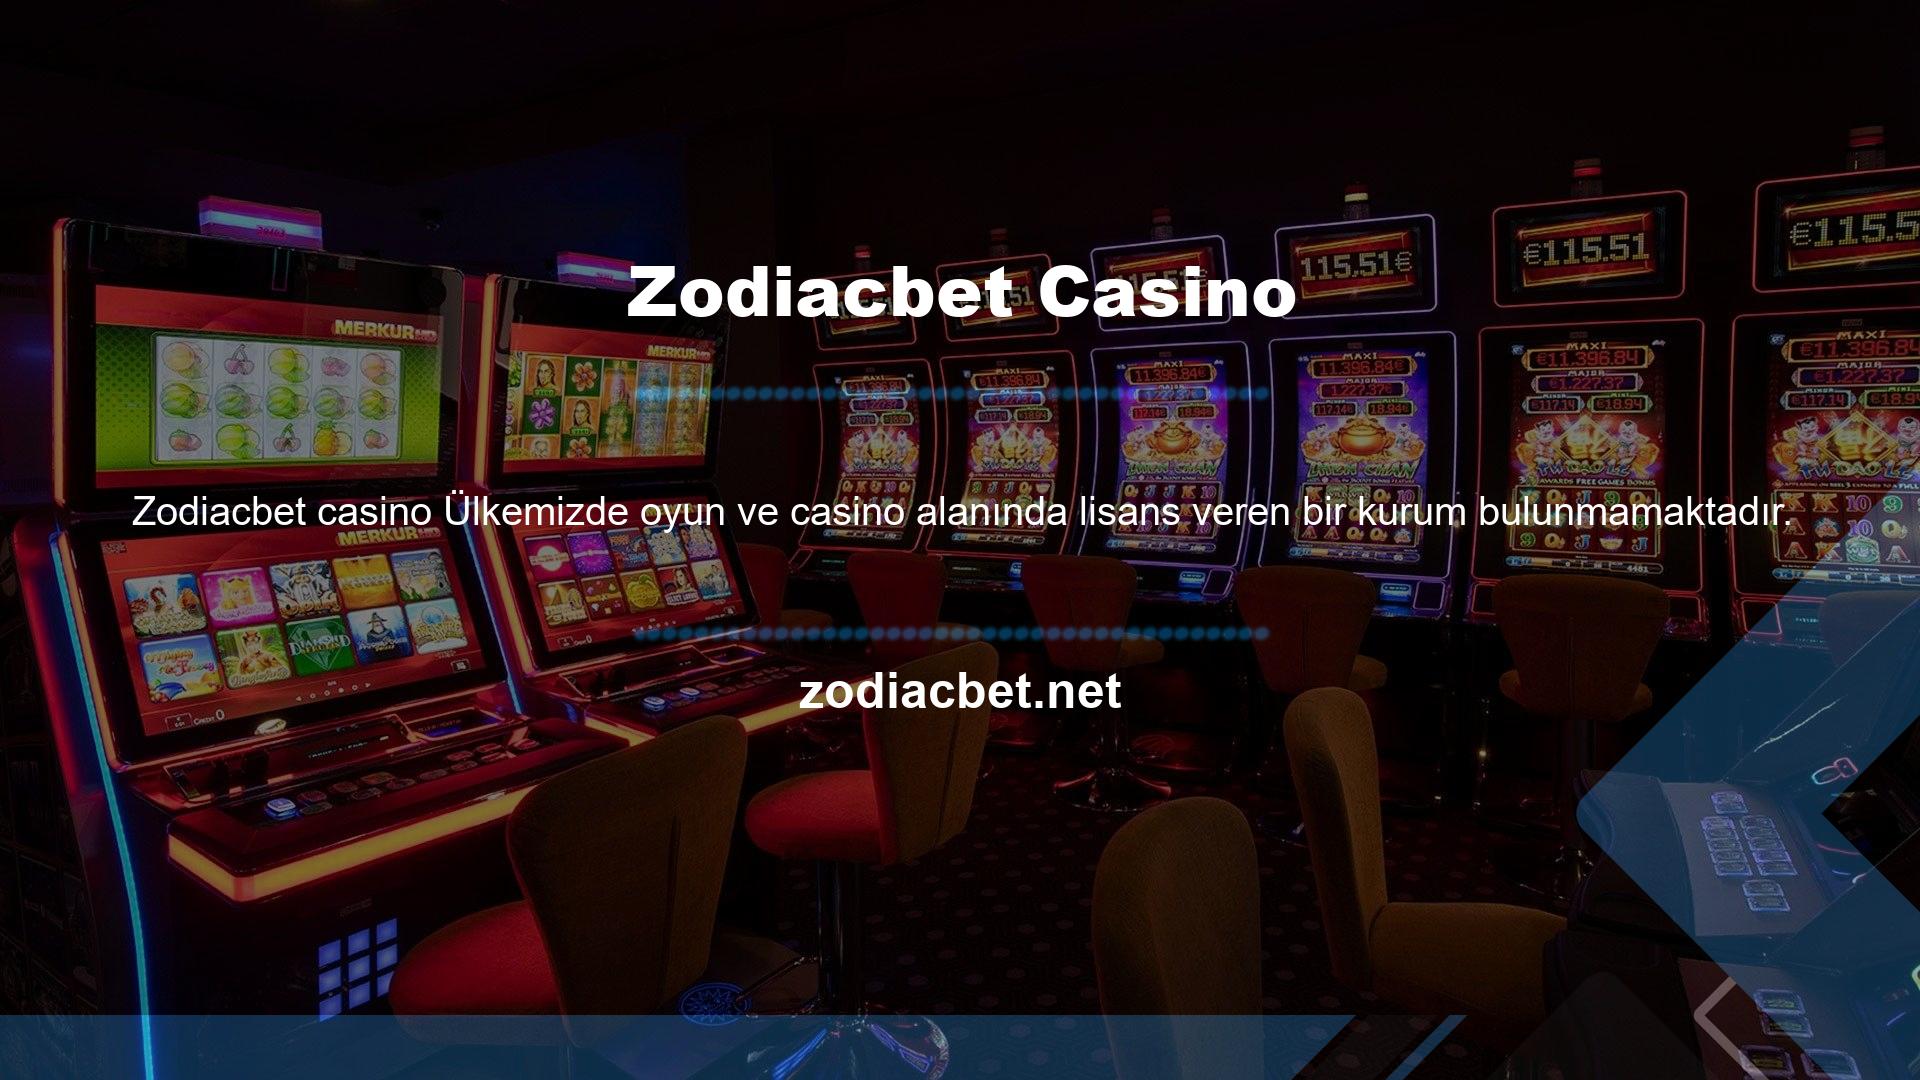 Casino sektöründe çalışmak isteyen web siteleri yurt dışından lisans almaktadır